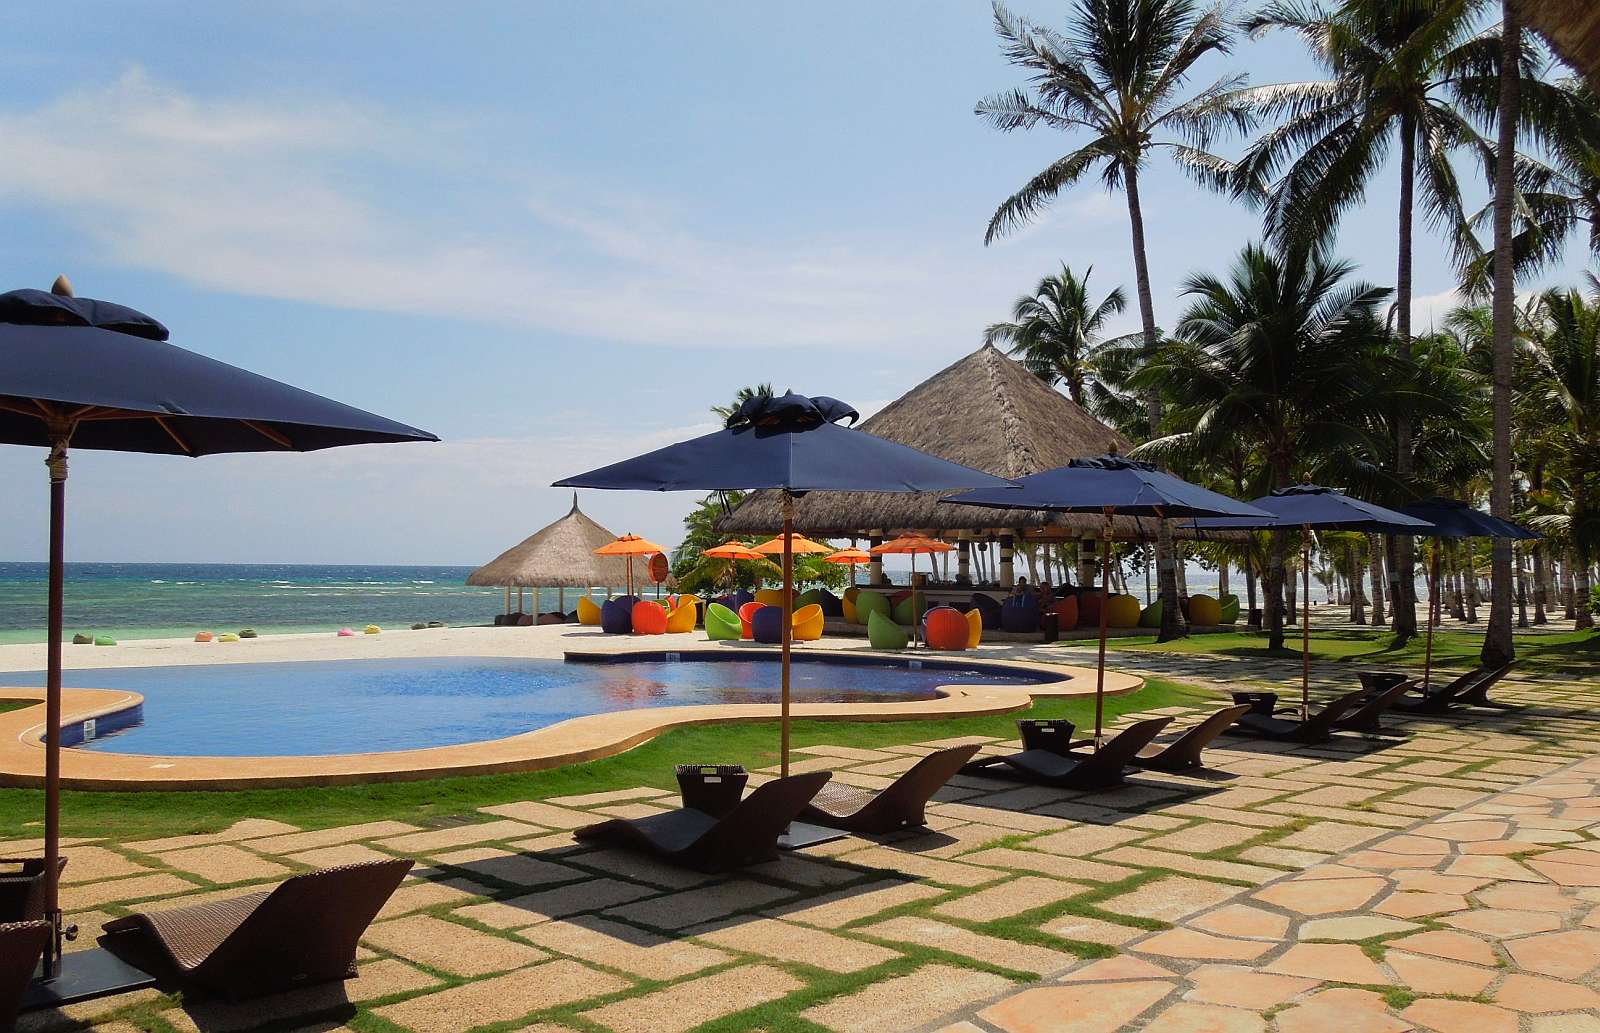 Bohol south palms resort pool